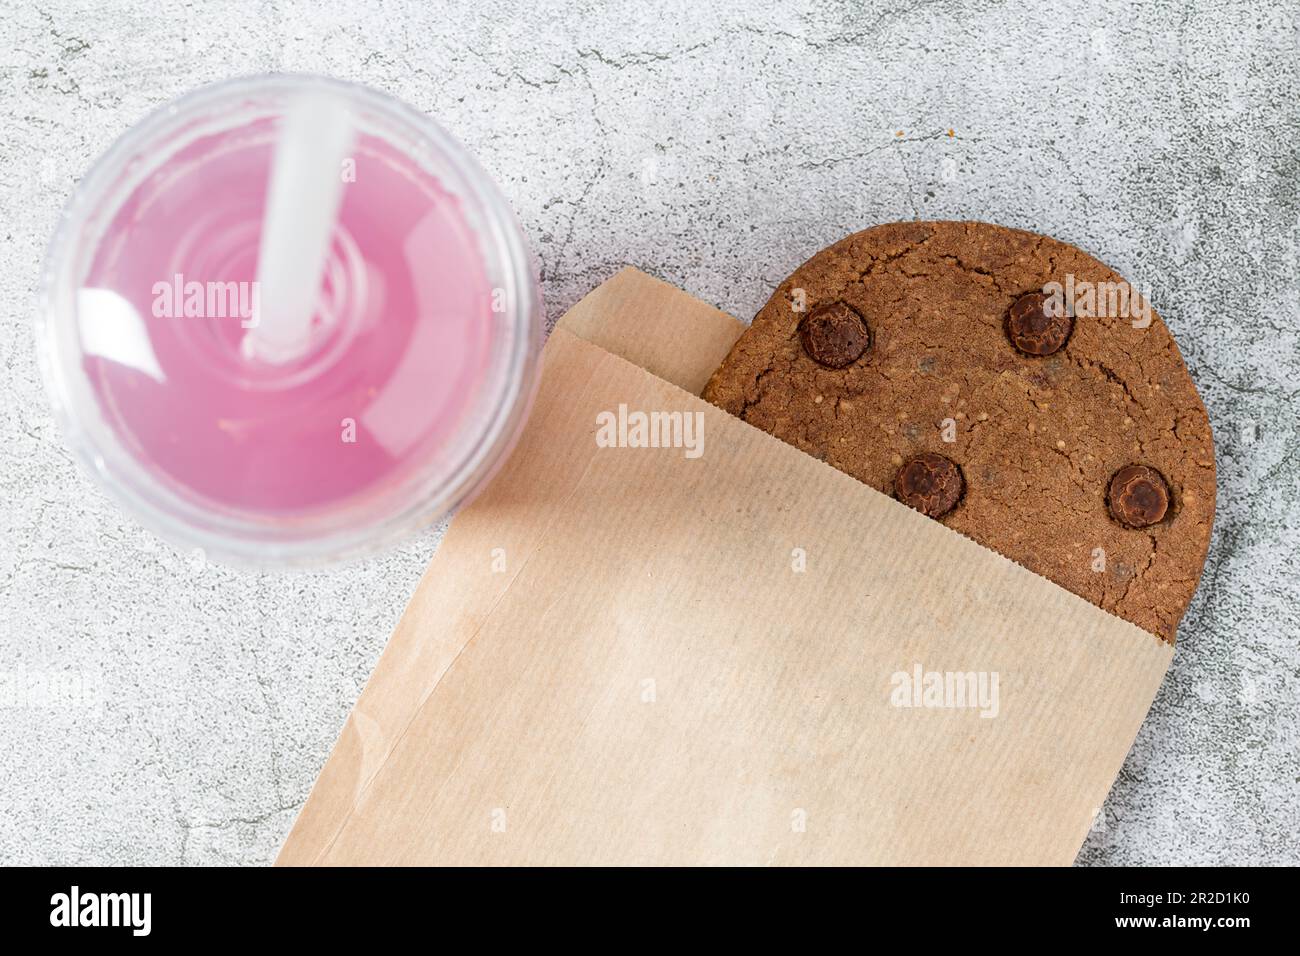 Schokoladenkeks, verpackt in eine Papiertüte mit einem Getränk daneben auf einem Steintisch Stockfoto